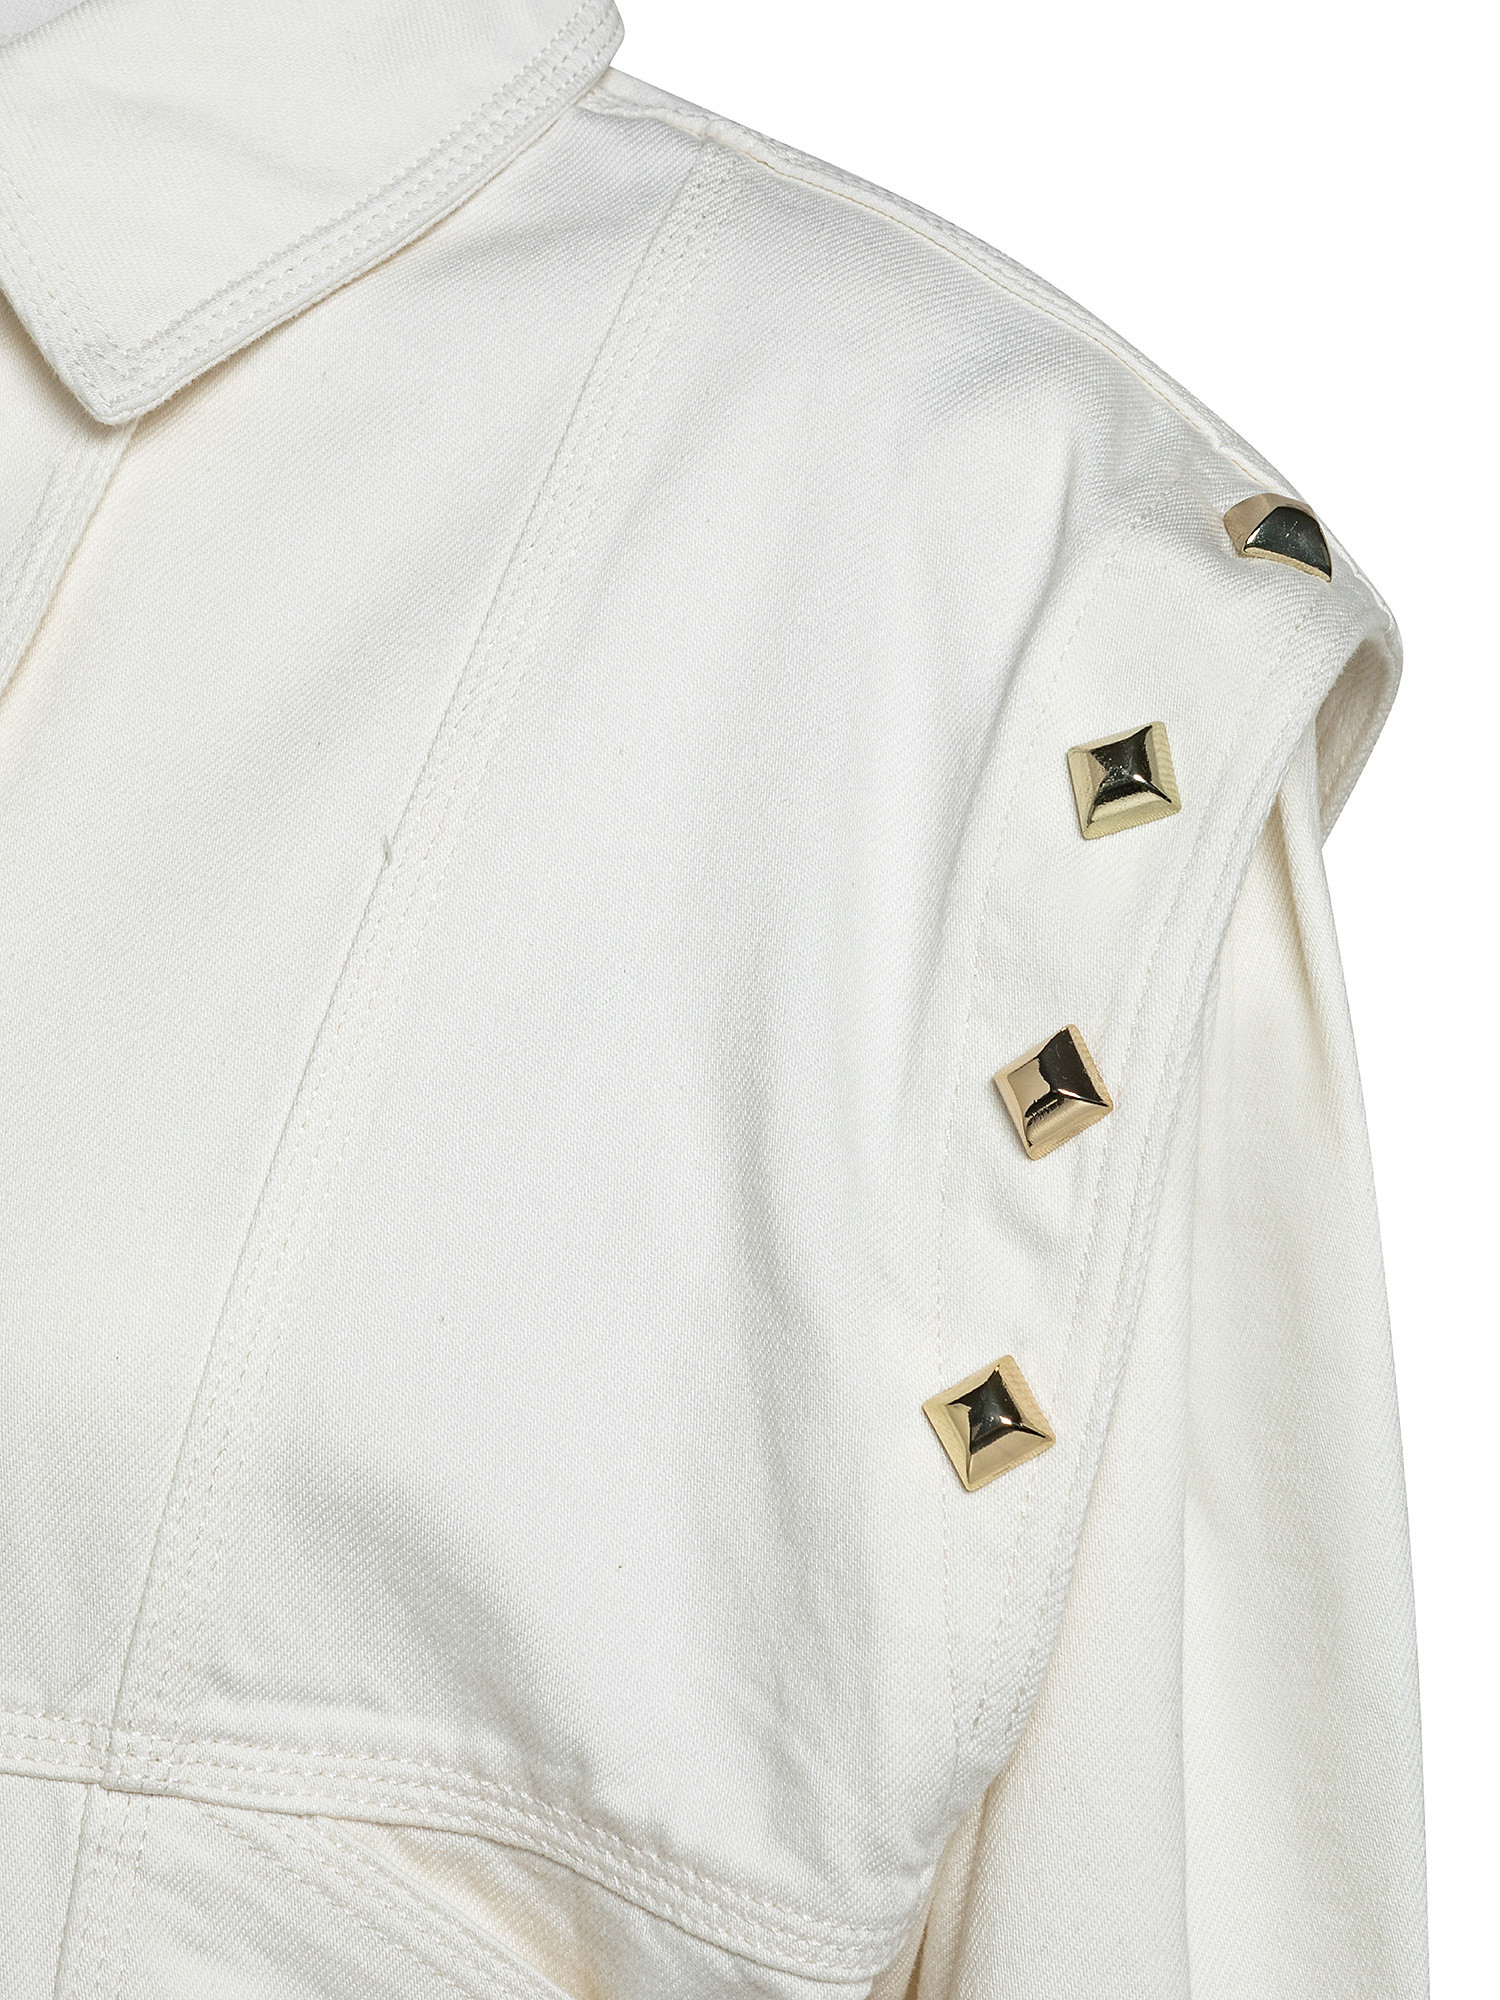 Studded jacket, White, large image number 2